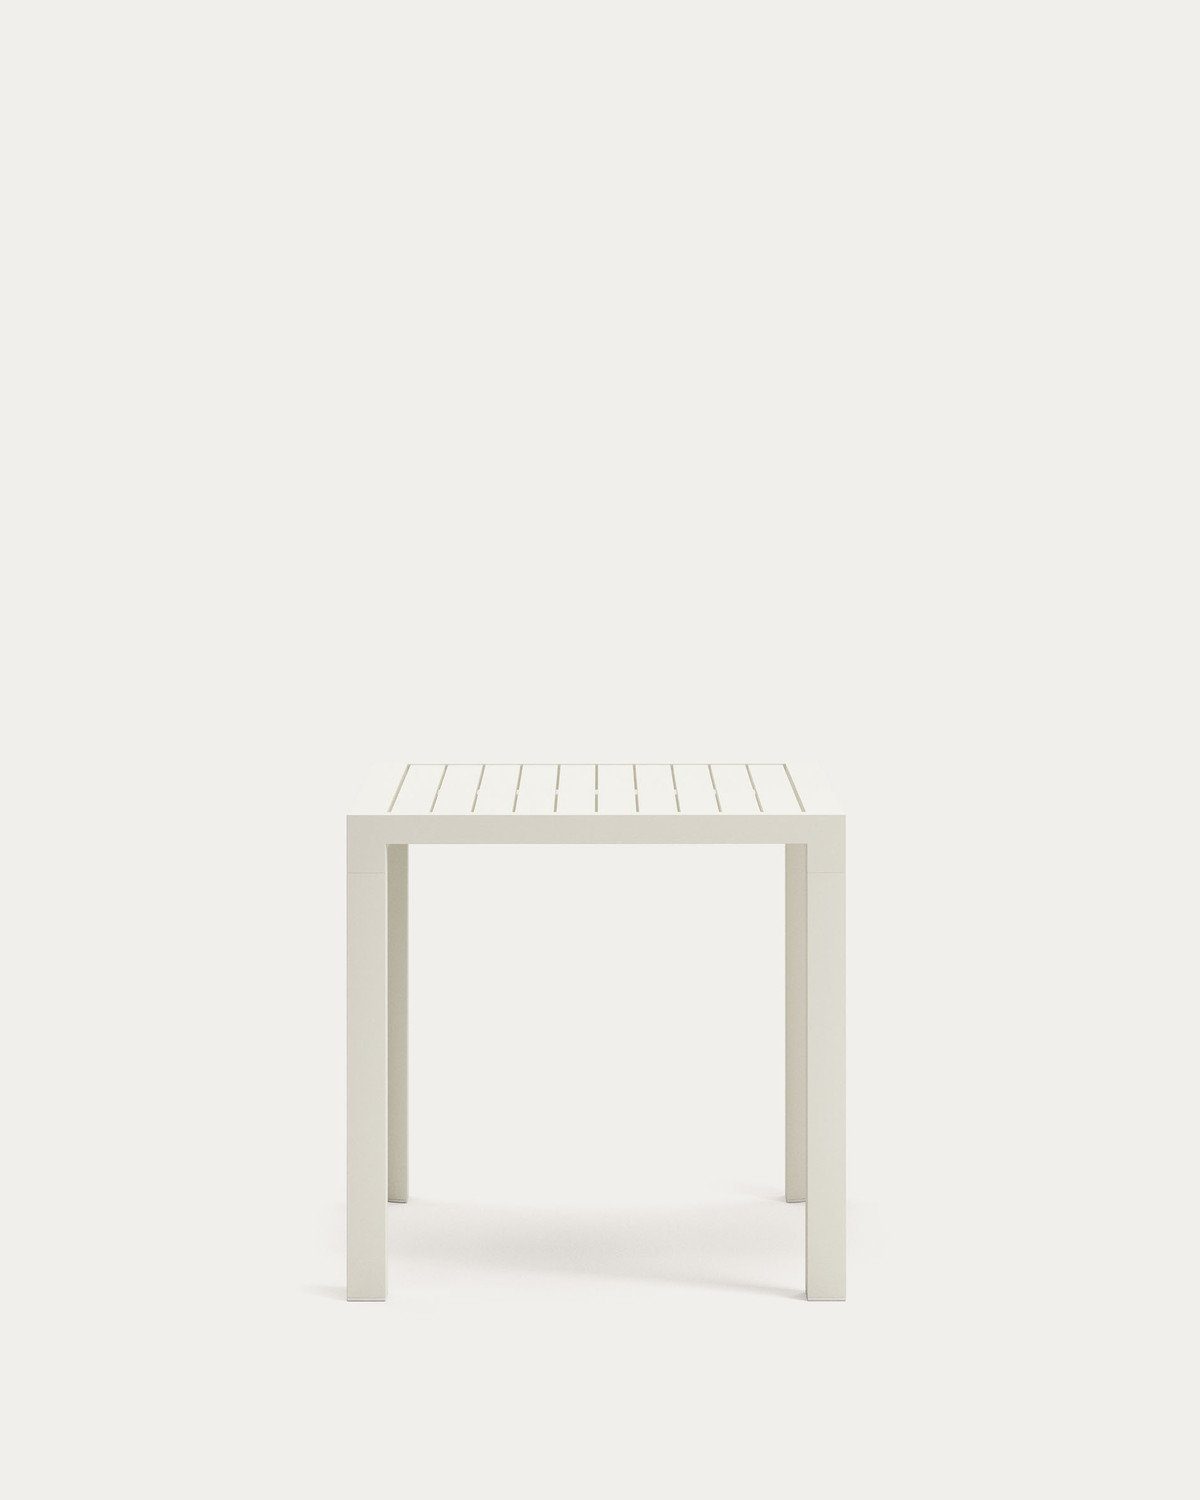 Natur24 Esstisch Gartentisch Culip 77 x 77 x 75 cm Aluminium Weiß Tisch Esstisch